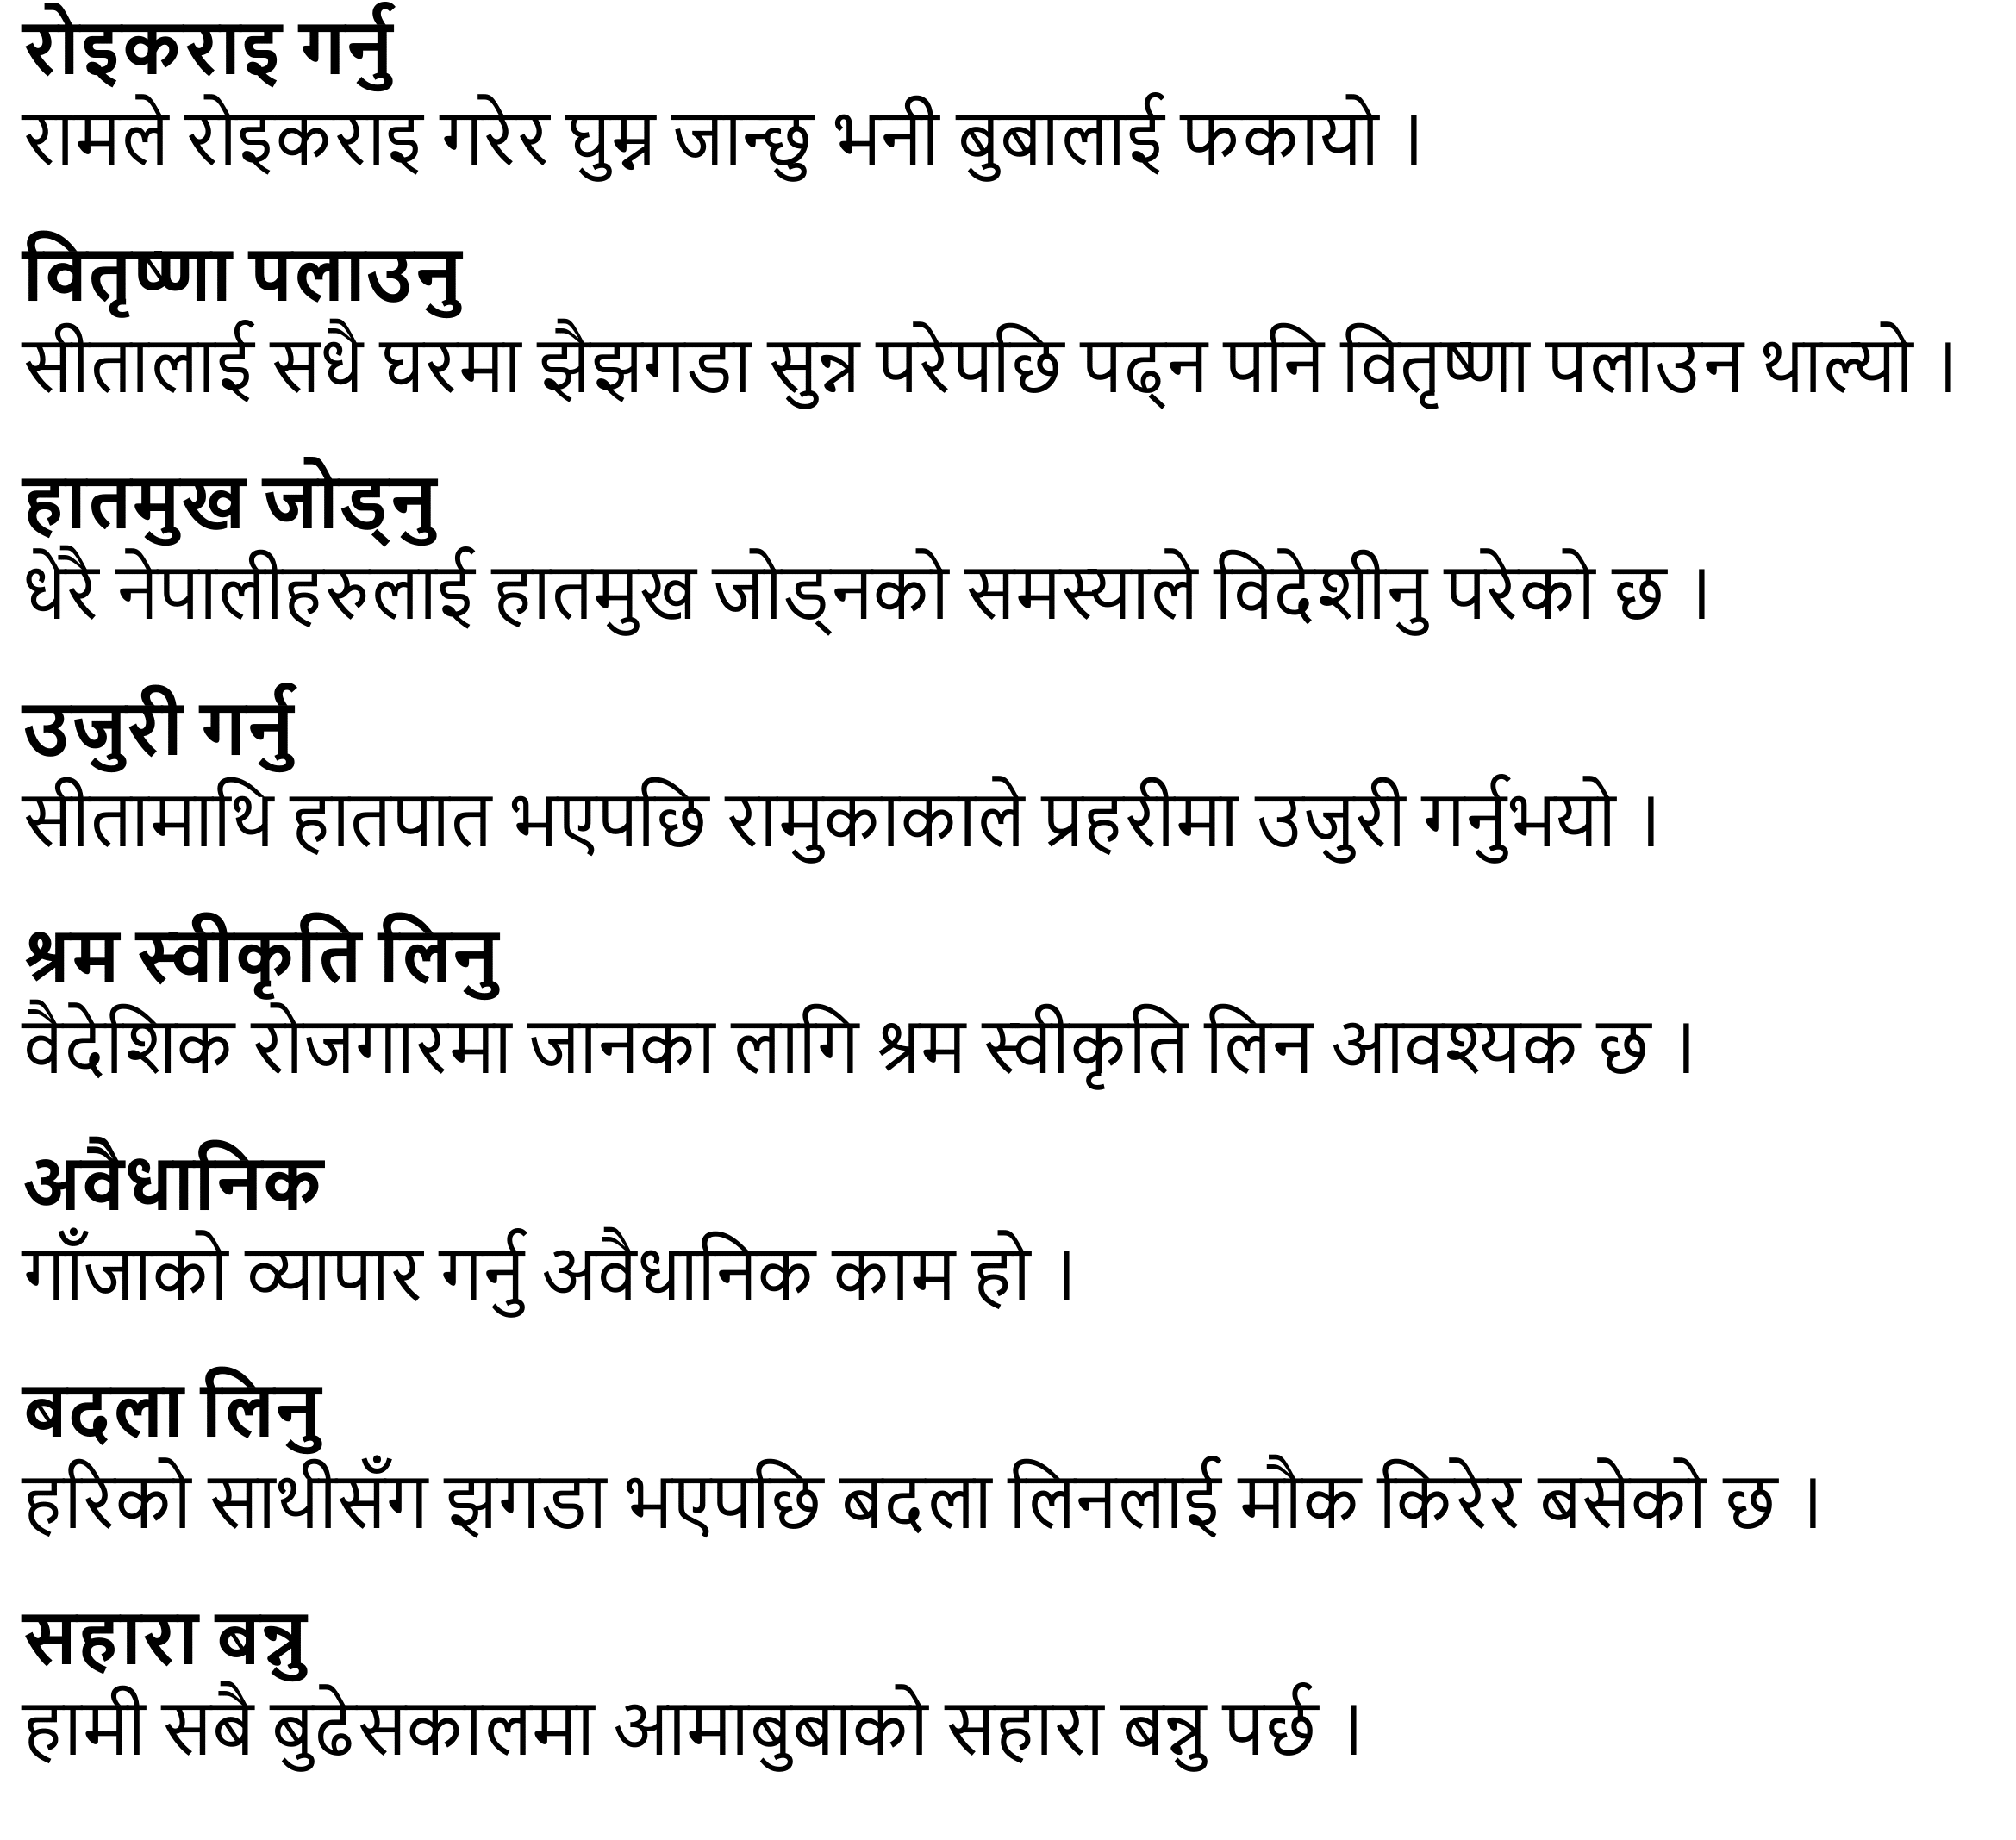 Sathi lai Chithi Exercise: Chapter 5 Class 11 Nepali